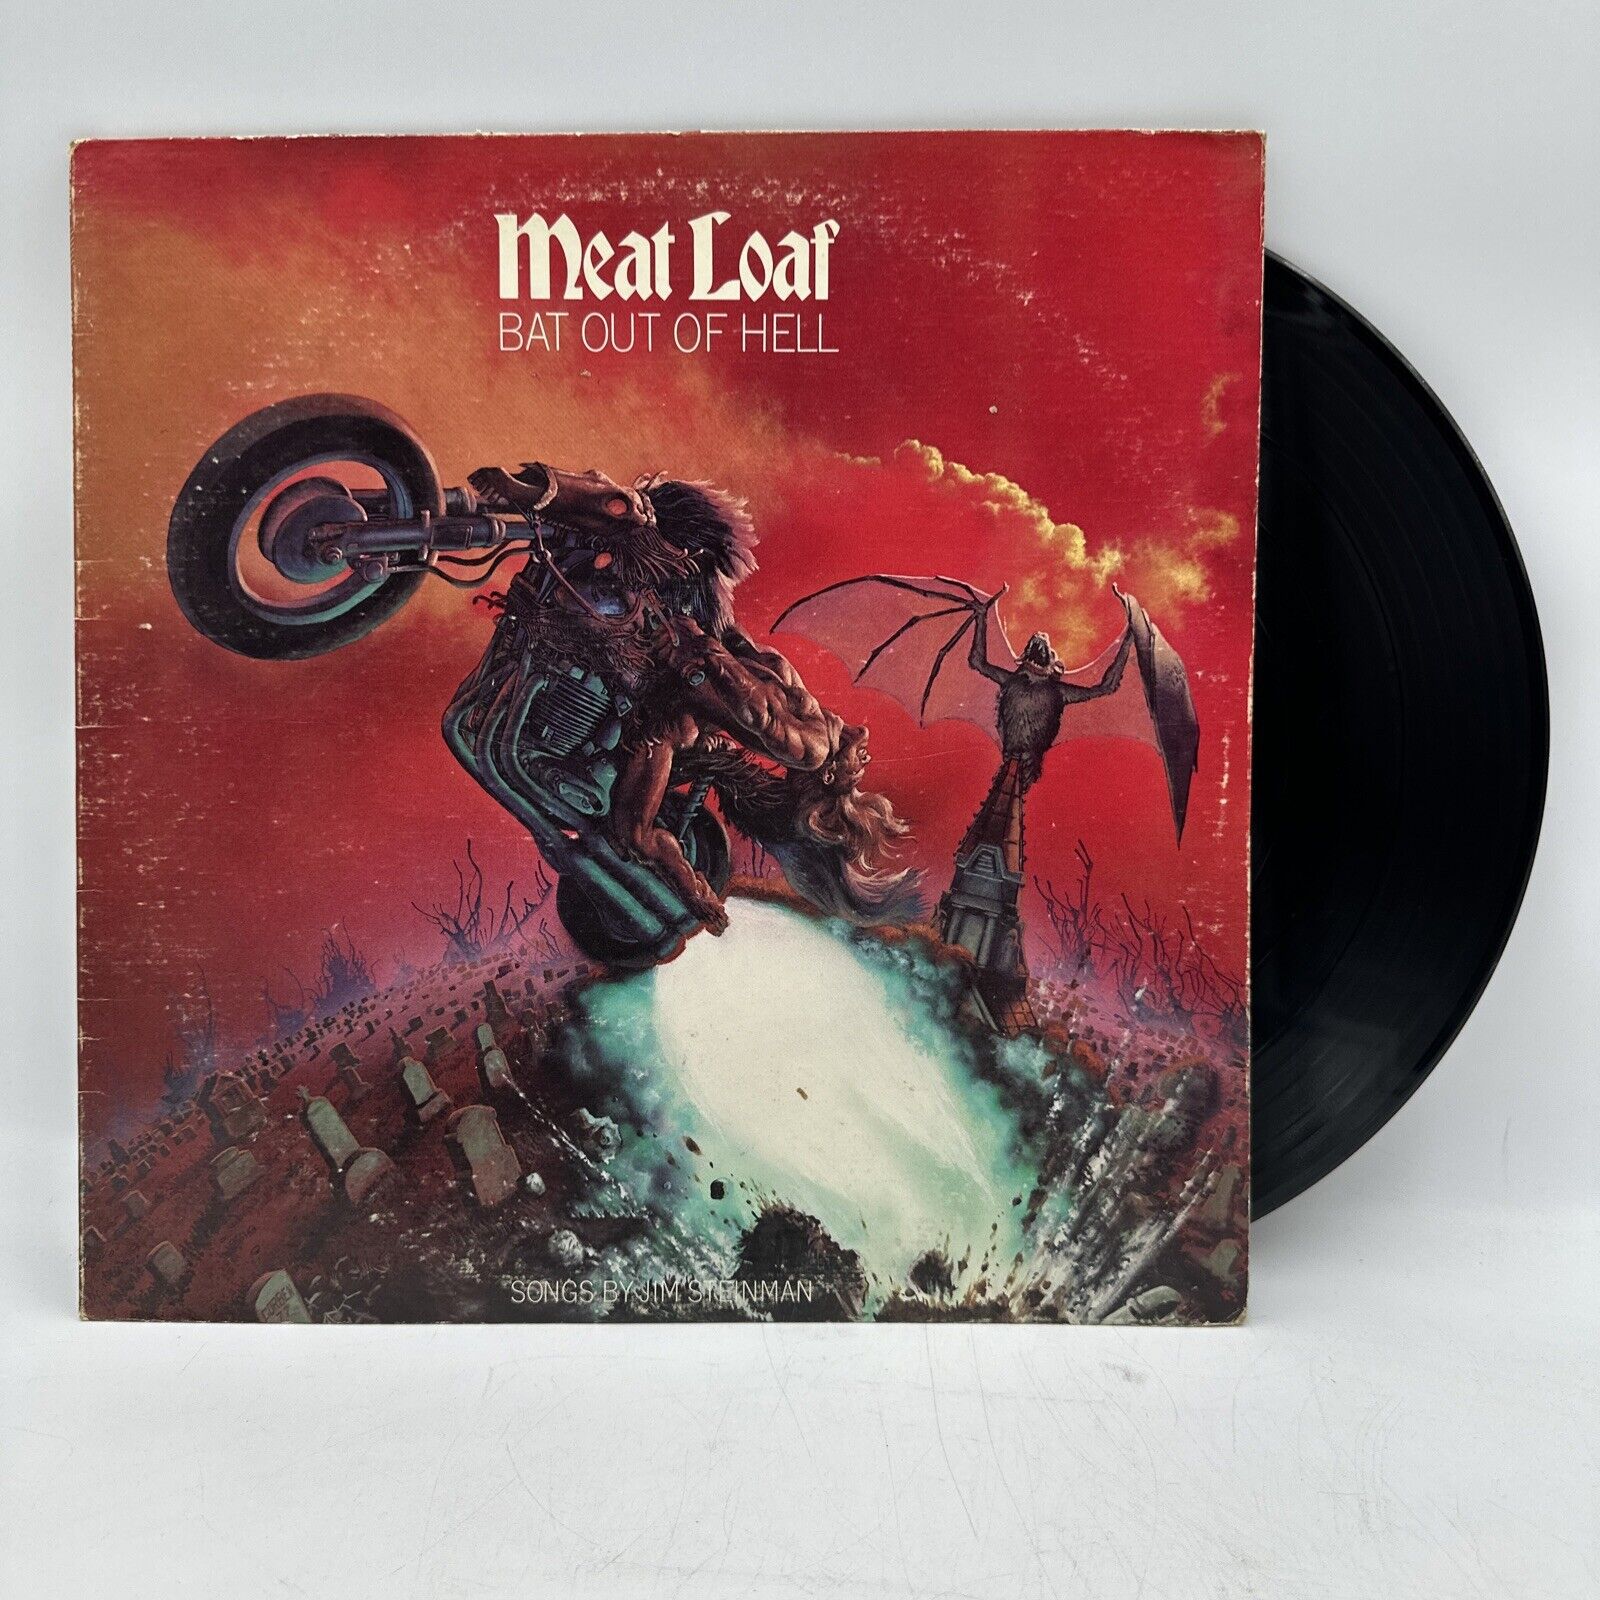 Vintage Old 1977 Original MEAT LOAF - BAT OUT OF HELL Vinyl Record LP